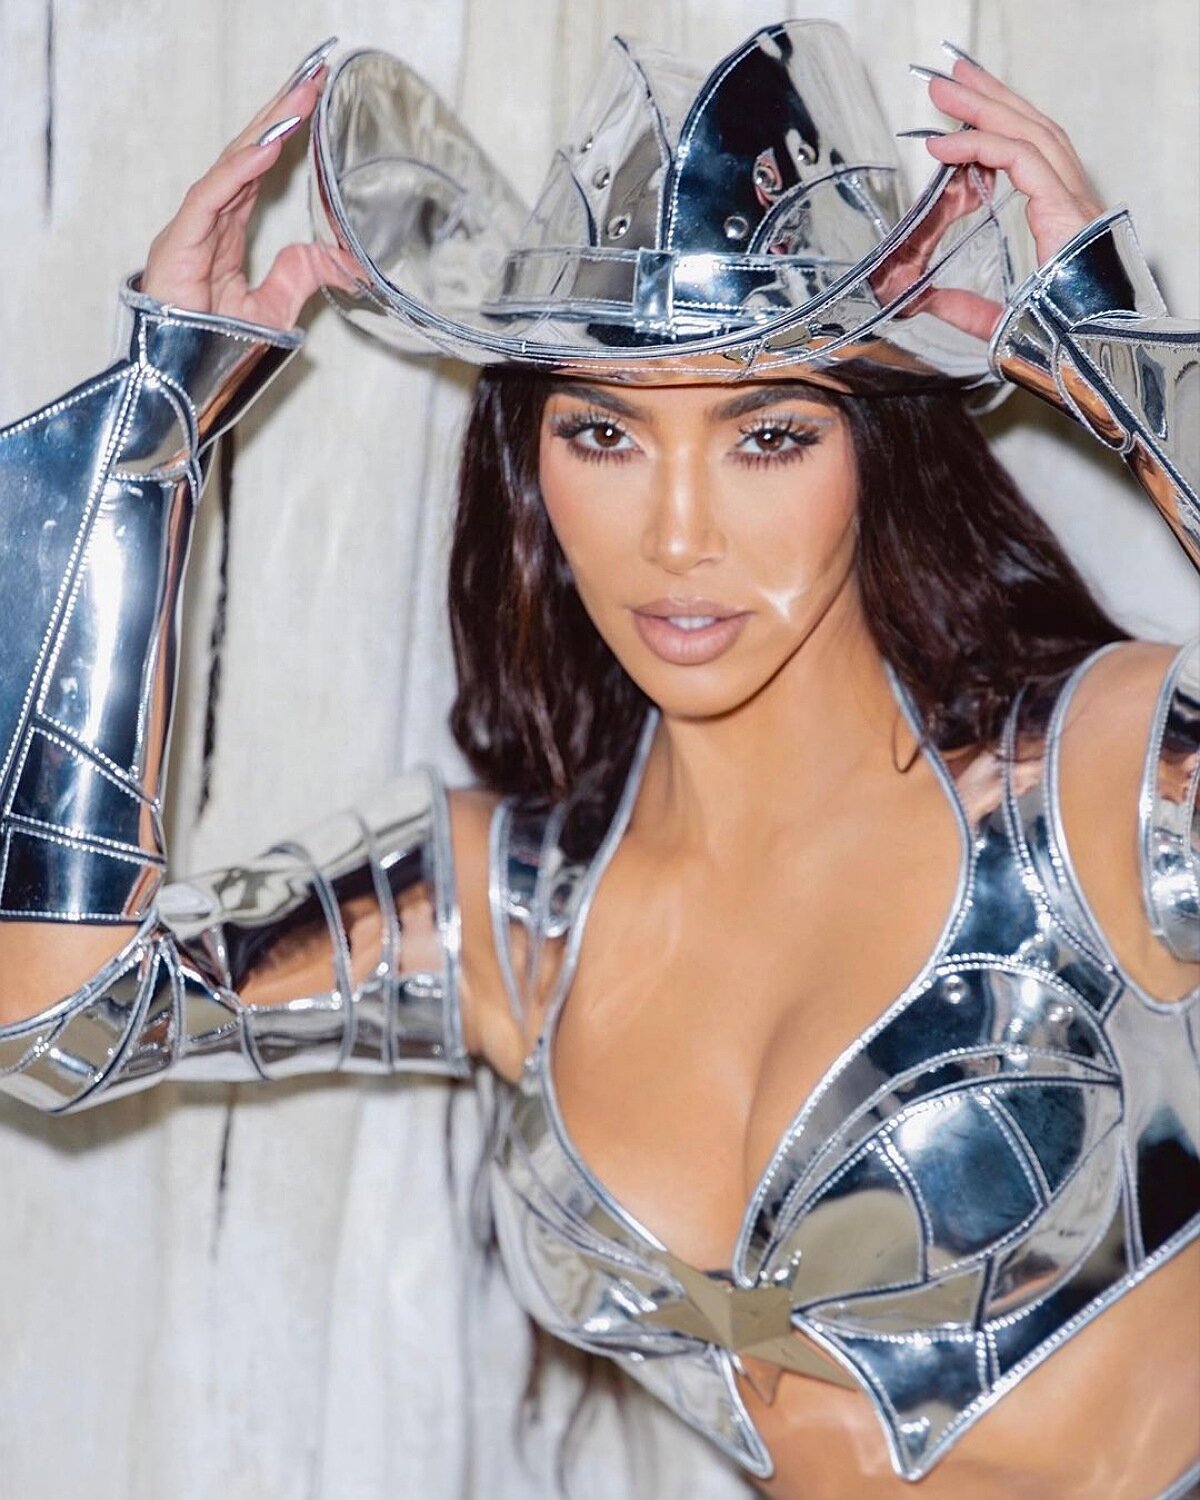 Ким Кардашьян — королева Хэллоуина в наряде сексуального робота-ковбоя